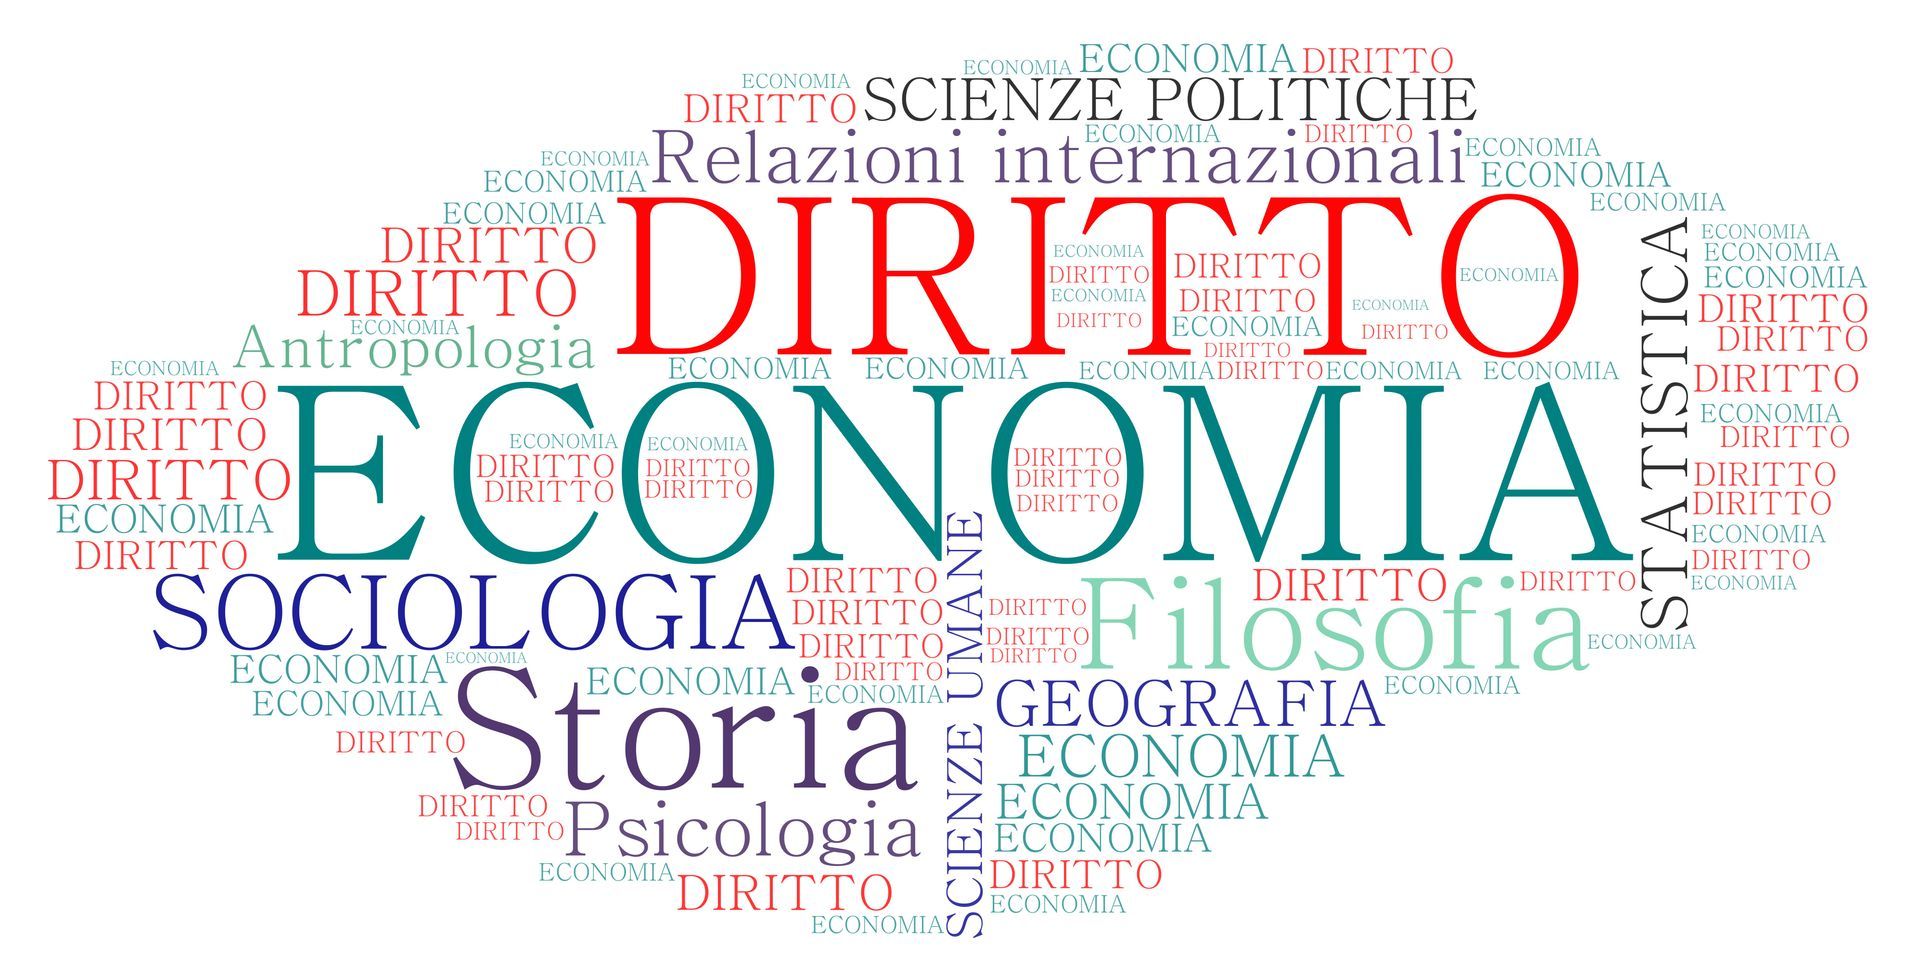 lliceo-economico-europeo-scienze-economiche-giuridiche-sociali